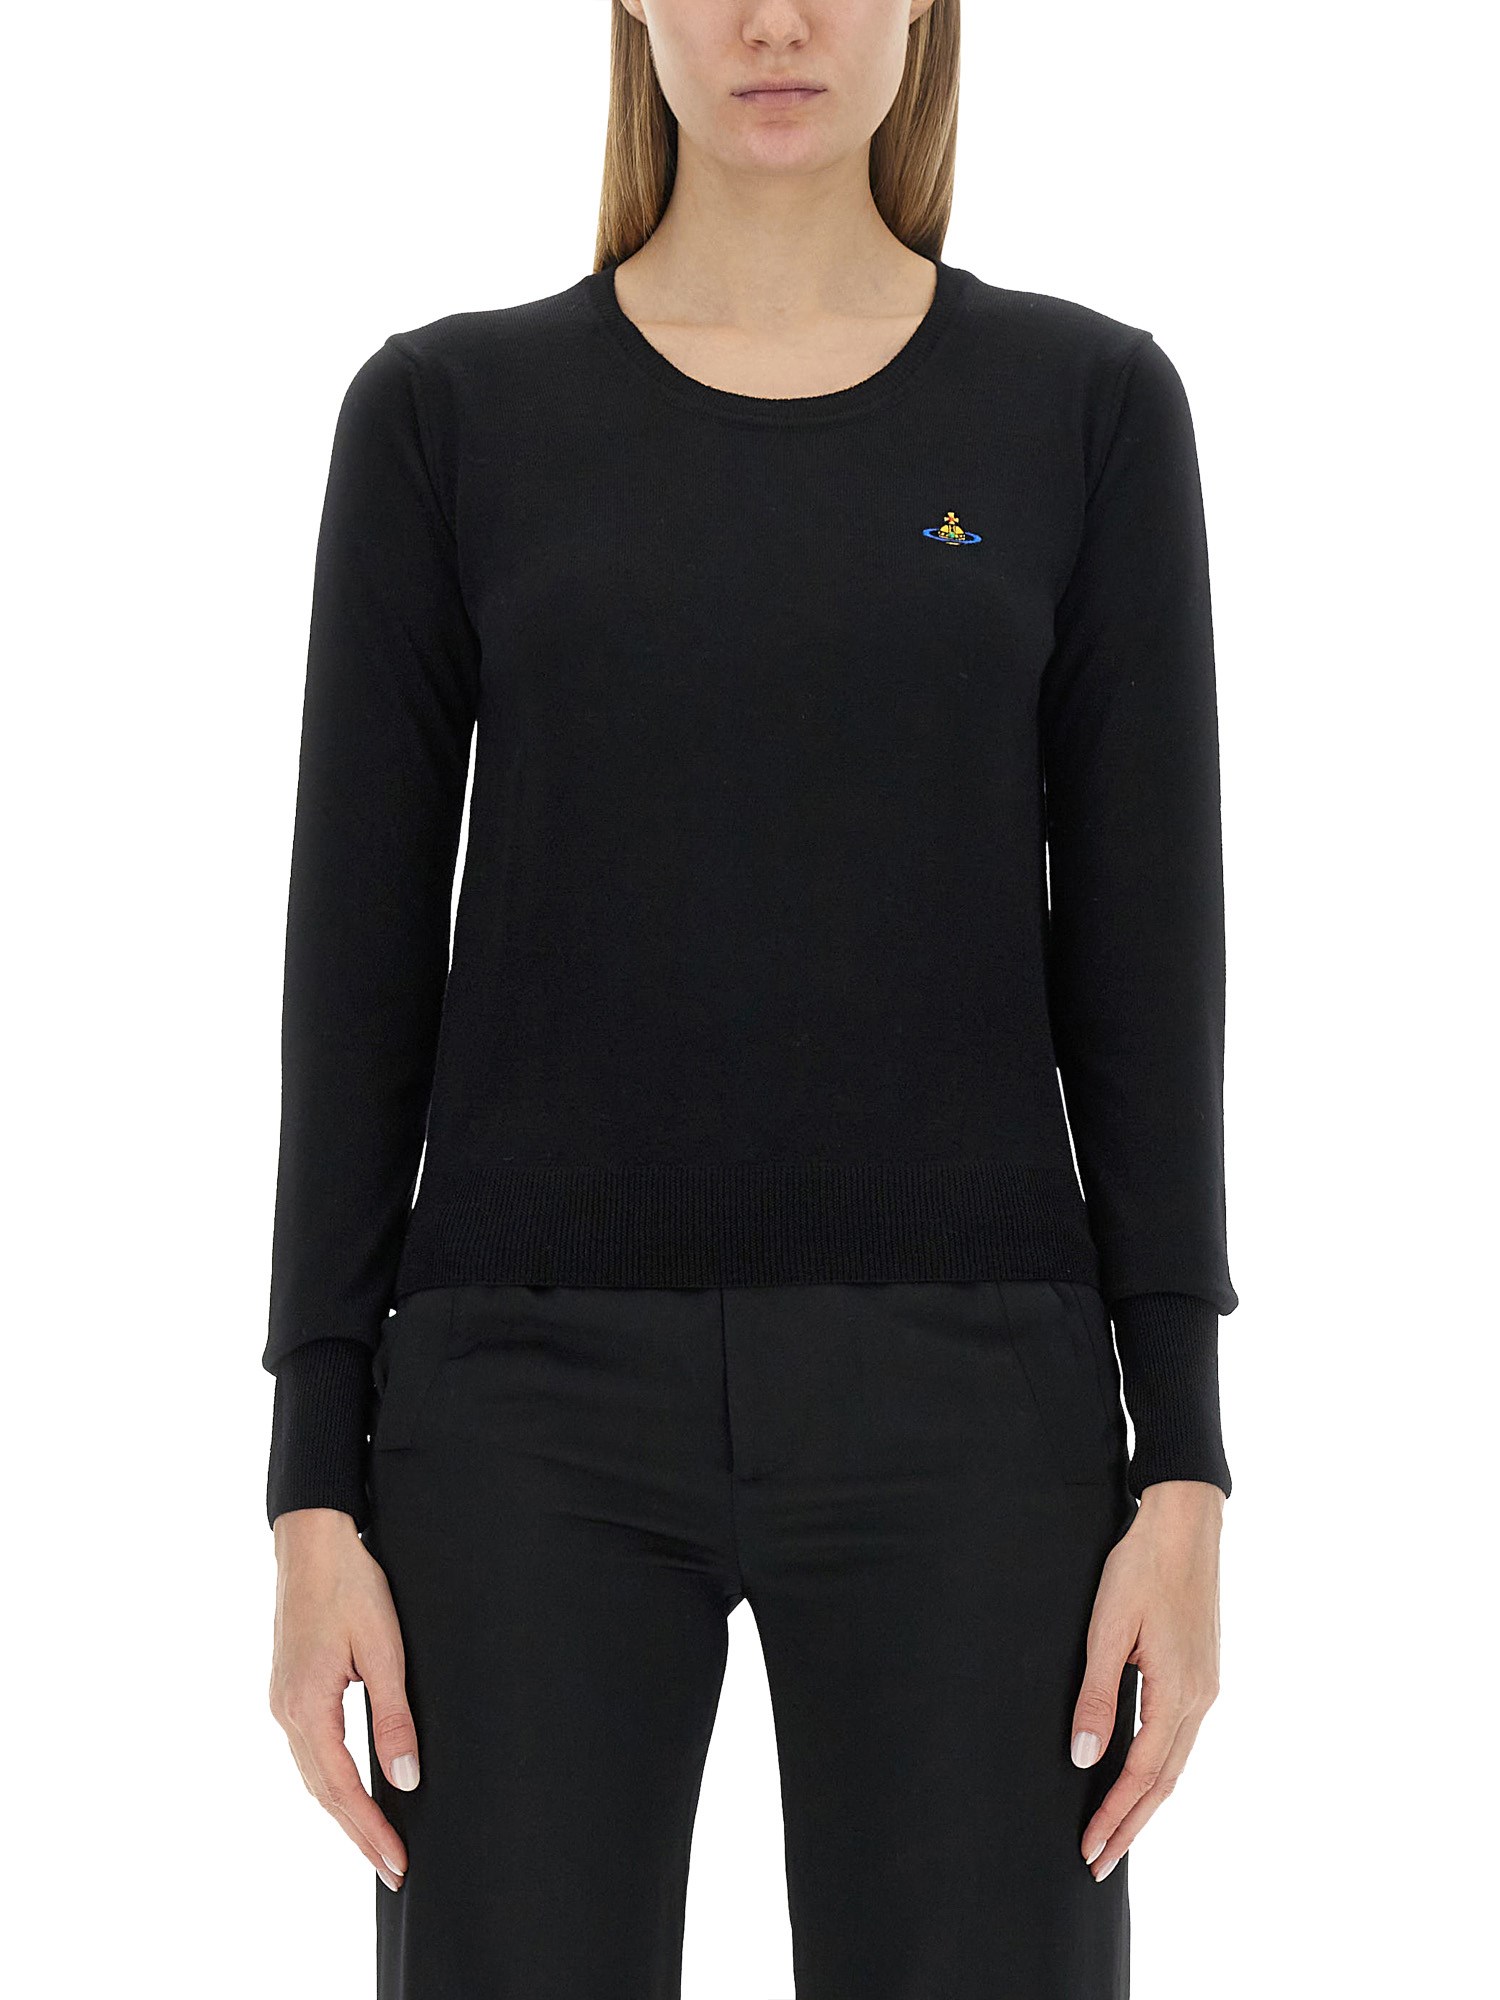 Vivienne Westwood "bea" Shirt In Black